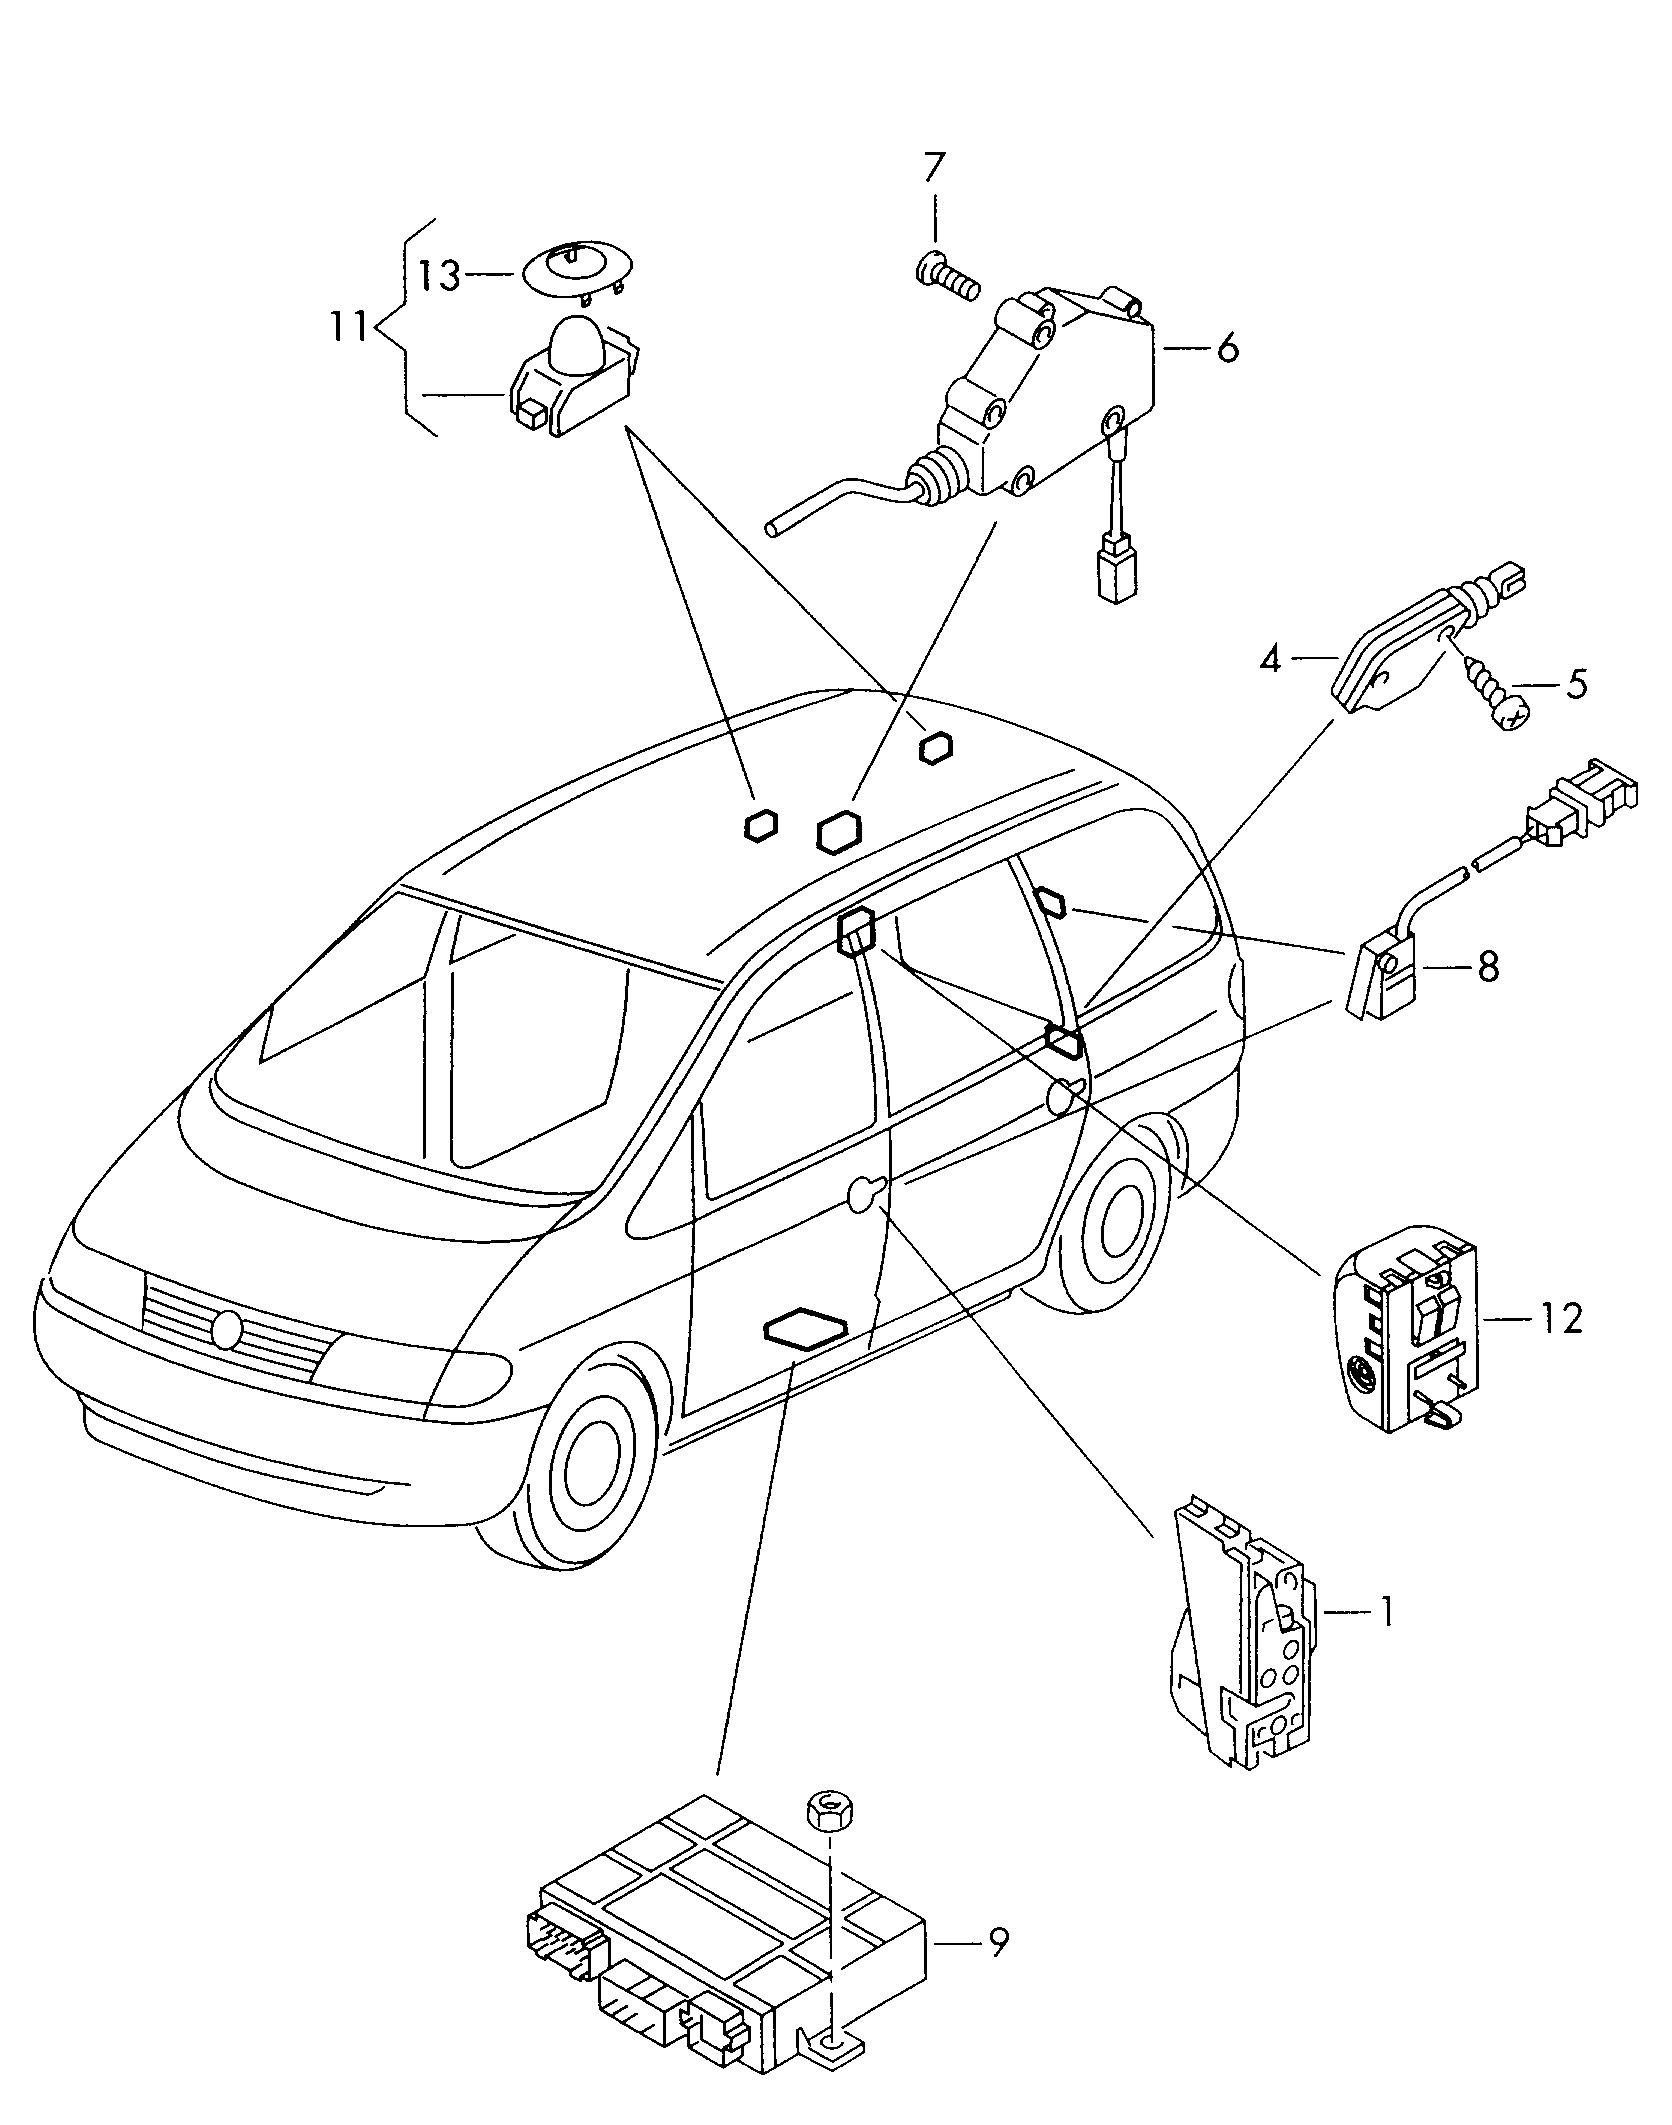 central locking system dėl Volkswagen Sharan Sharan (2001 - 2002)